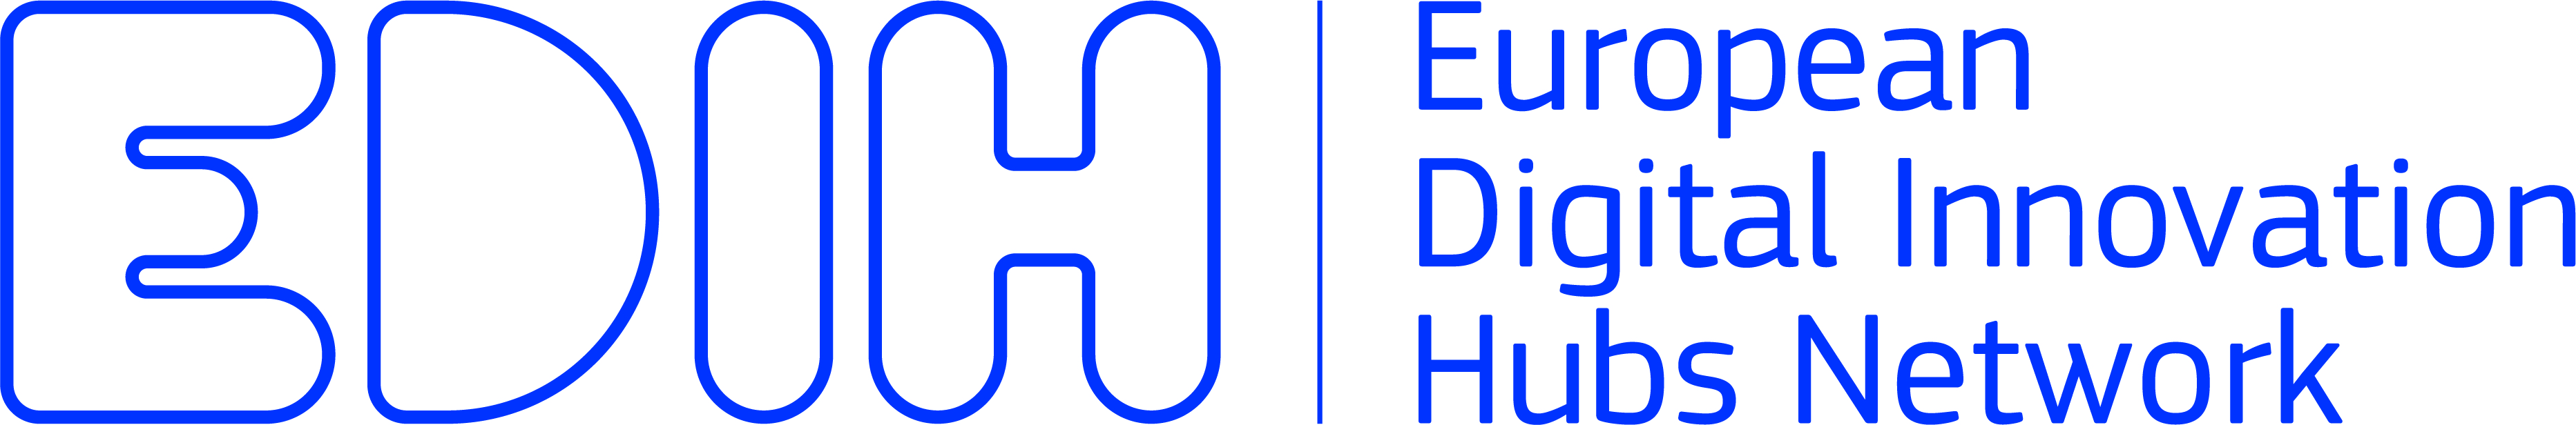 edih logo